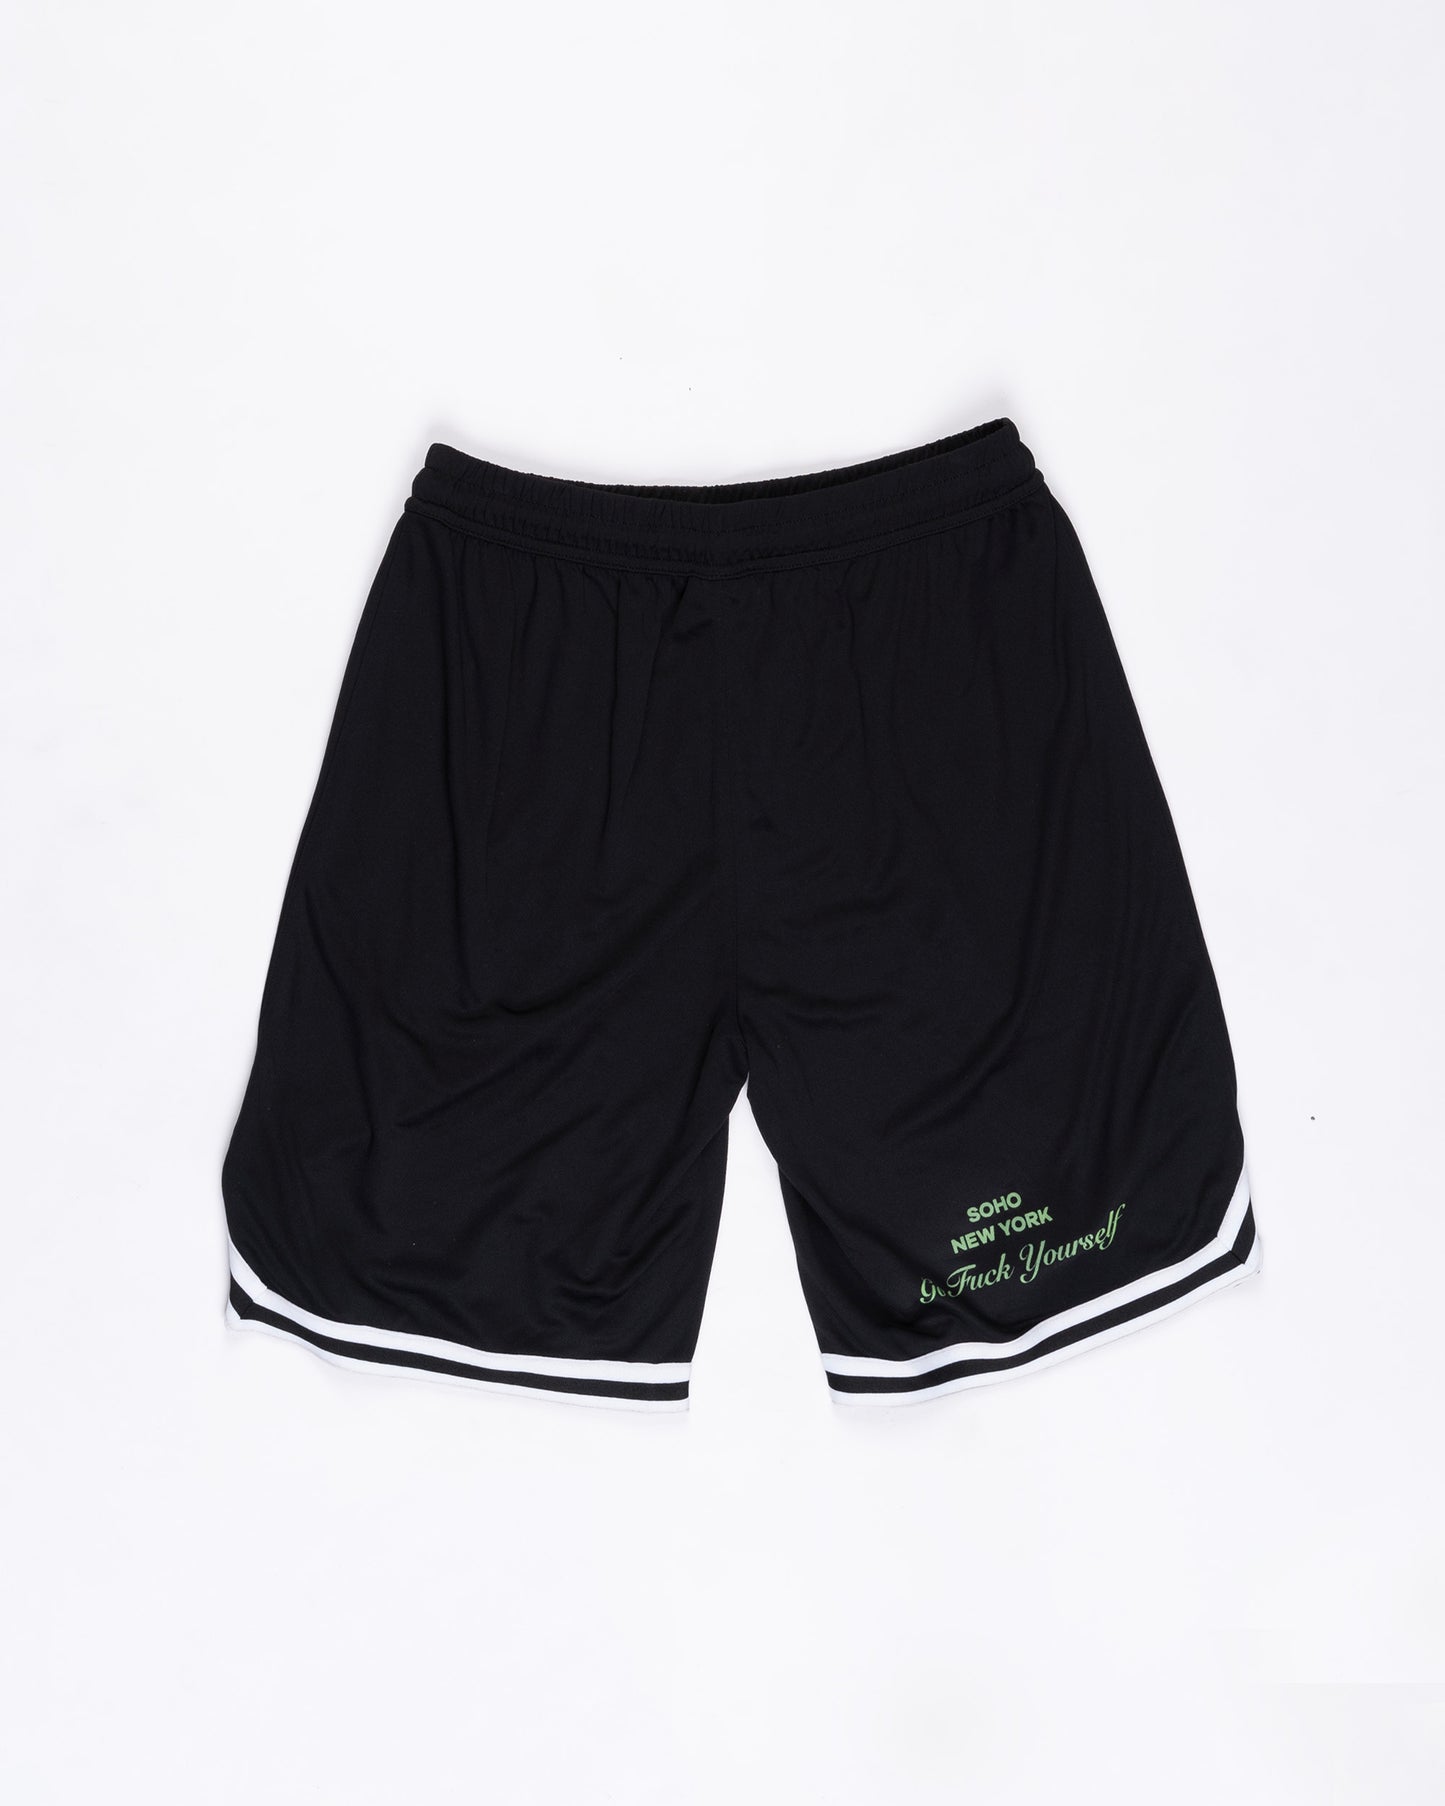 Black and white Basketball Shorts Size: XLarge